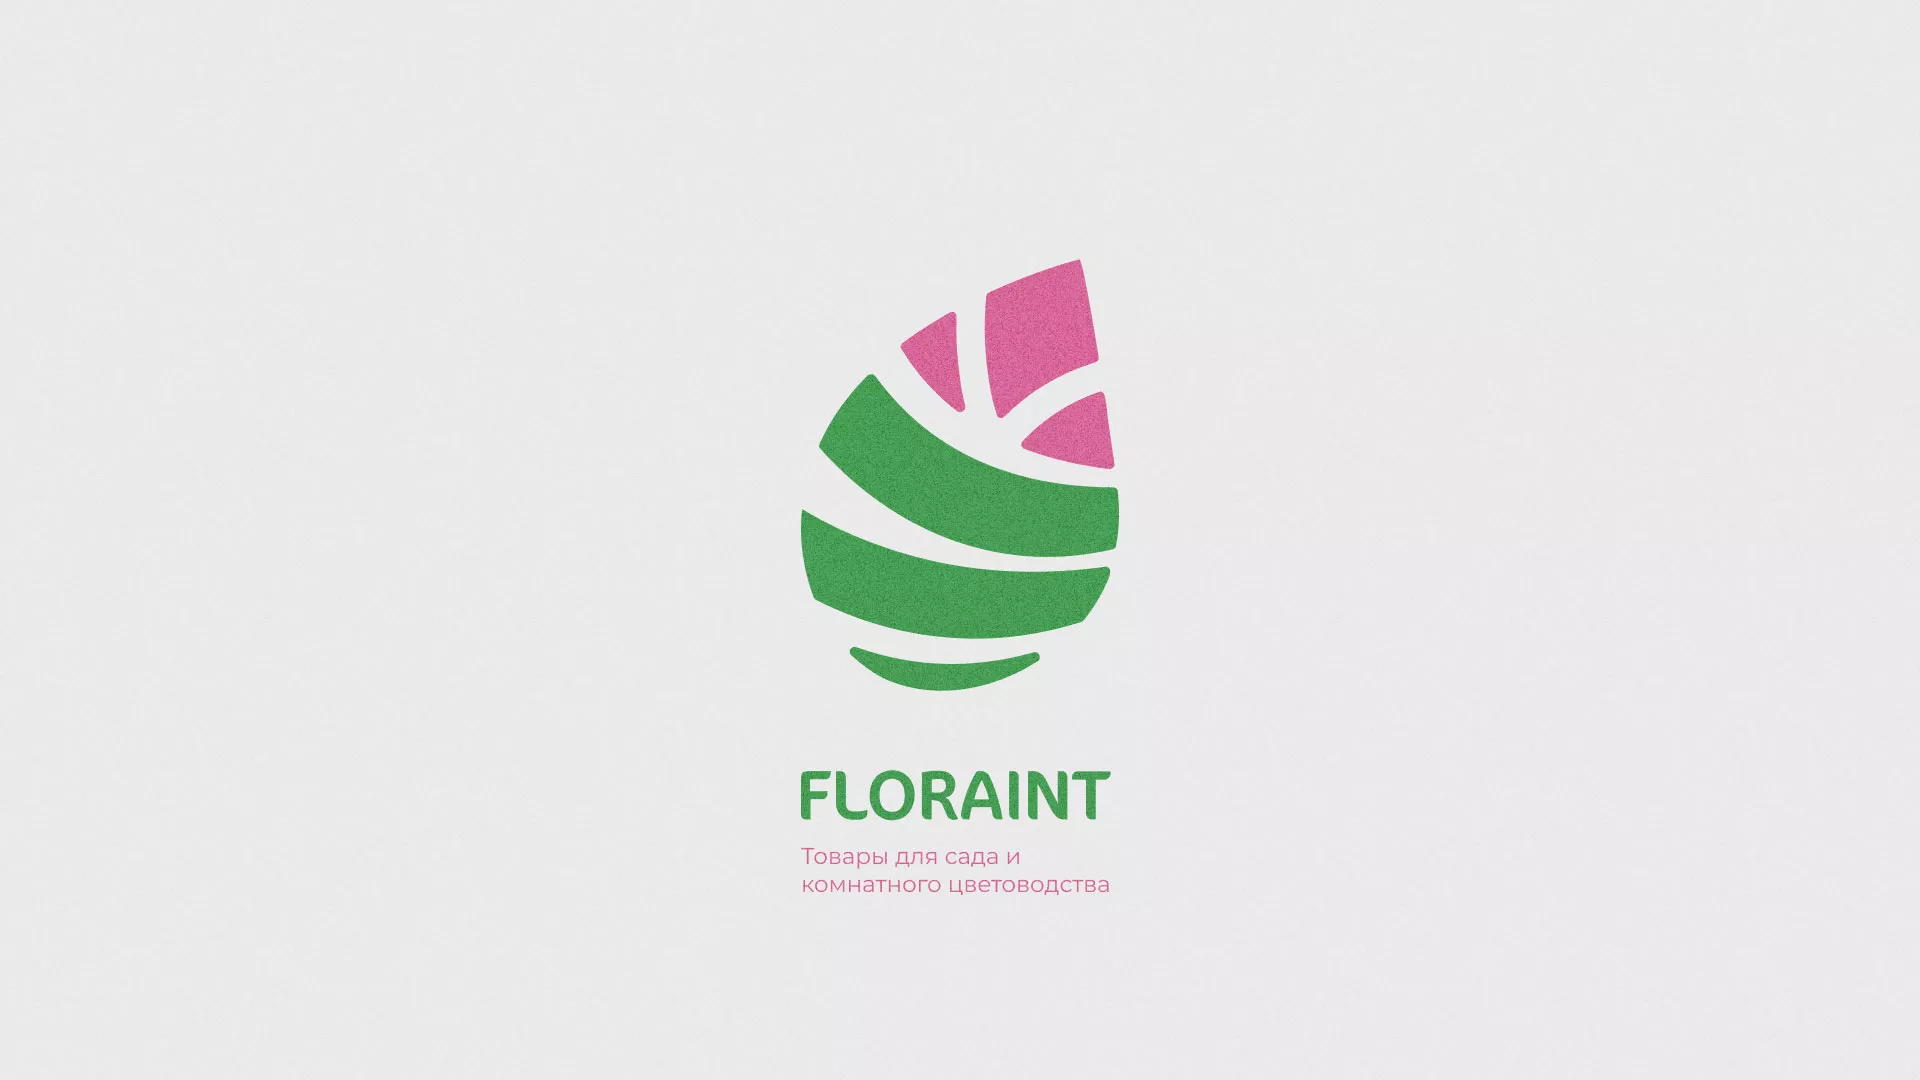 Разработка оформления профиля Instagram для магазина «Floraint» в Донецке